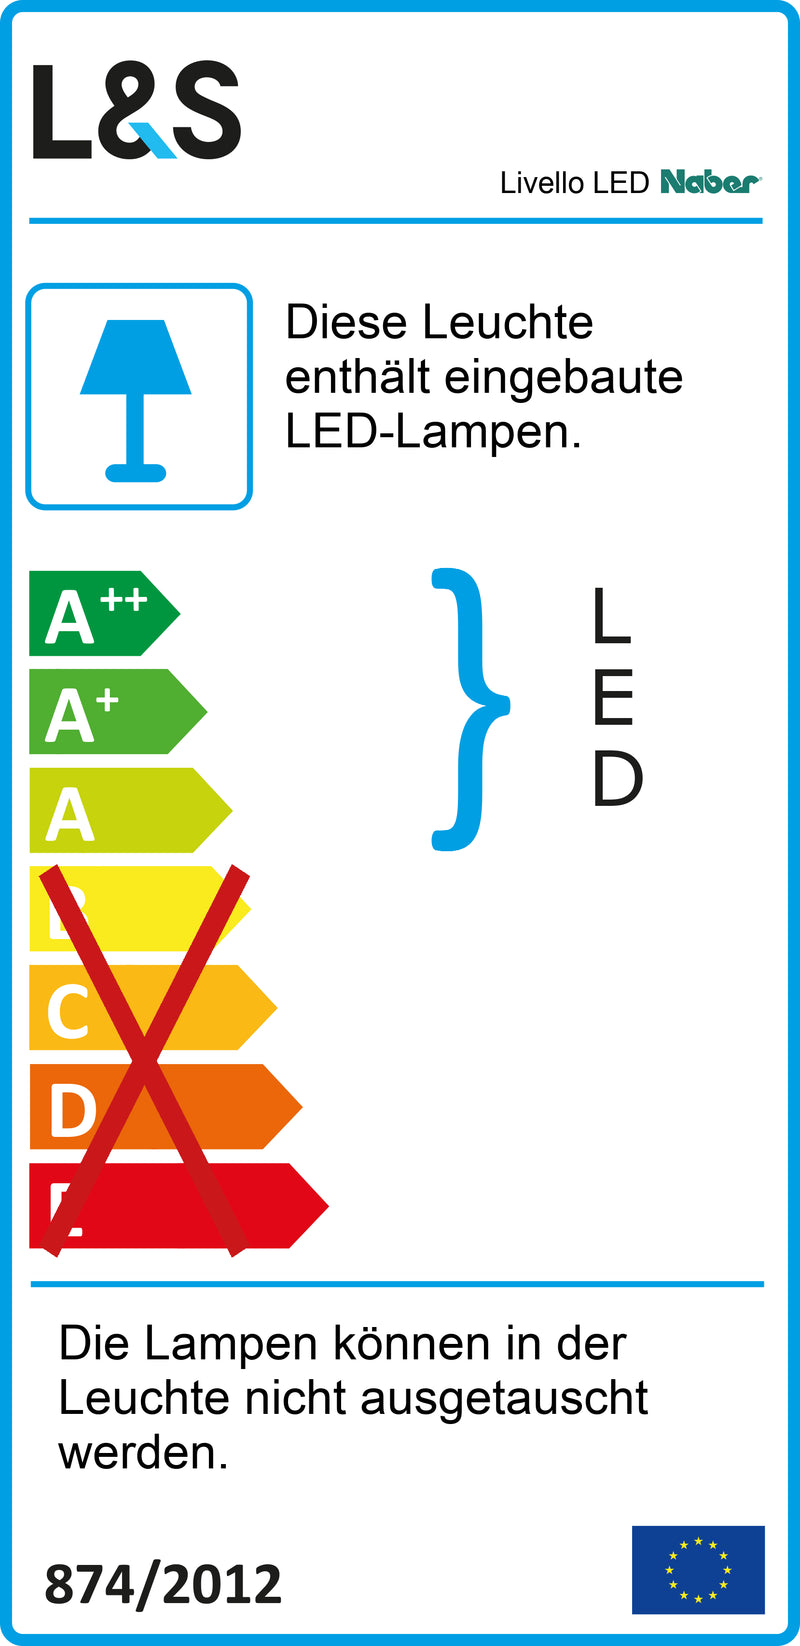 E-Label zu Zeichnung zu Livello LED als Variante Set-3, alufarbig von Naber GmbH in der Kategorie Lichttechnik in Österreich auf conceptshop.at